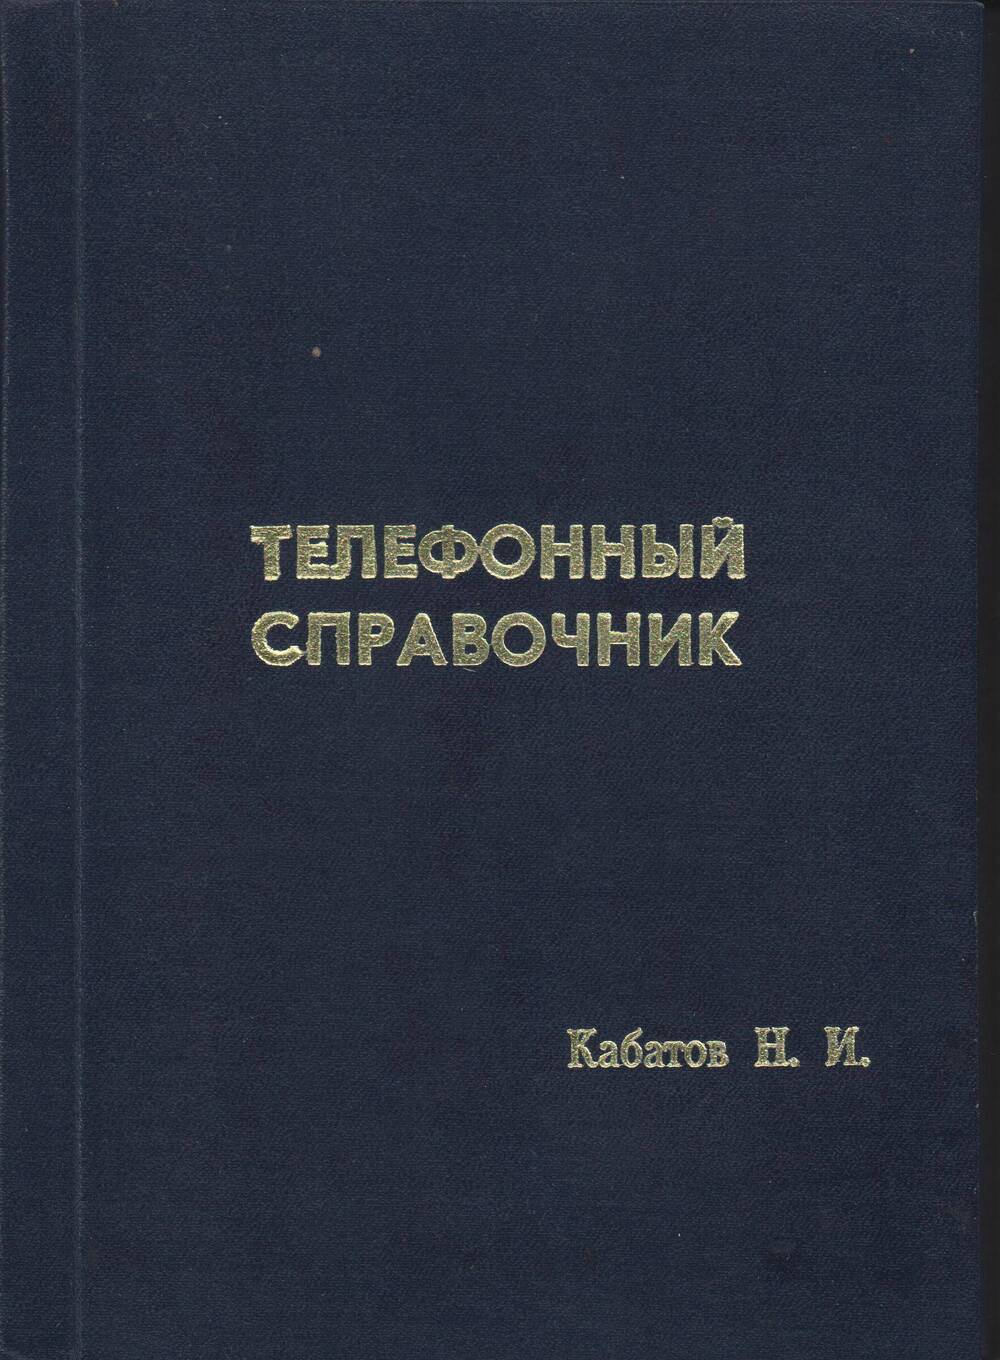 Телефонный справочник Кабатова Николая Ивановича с автографом, 1990 год.